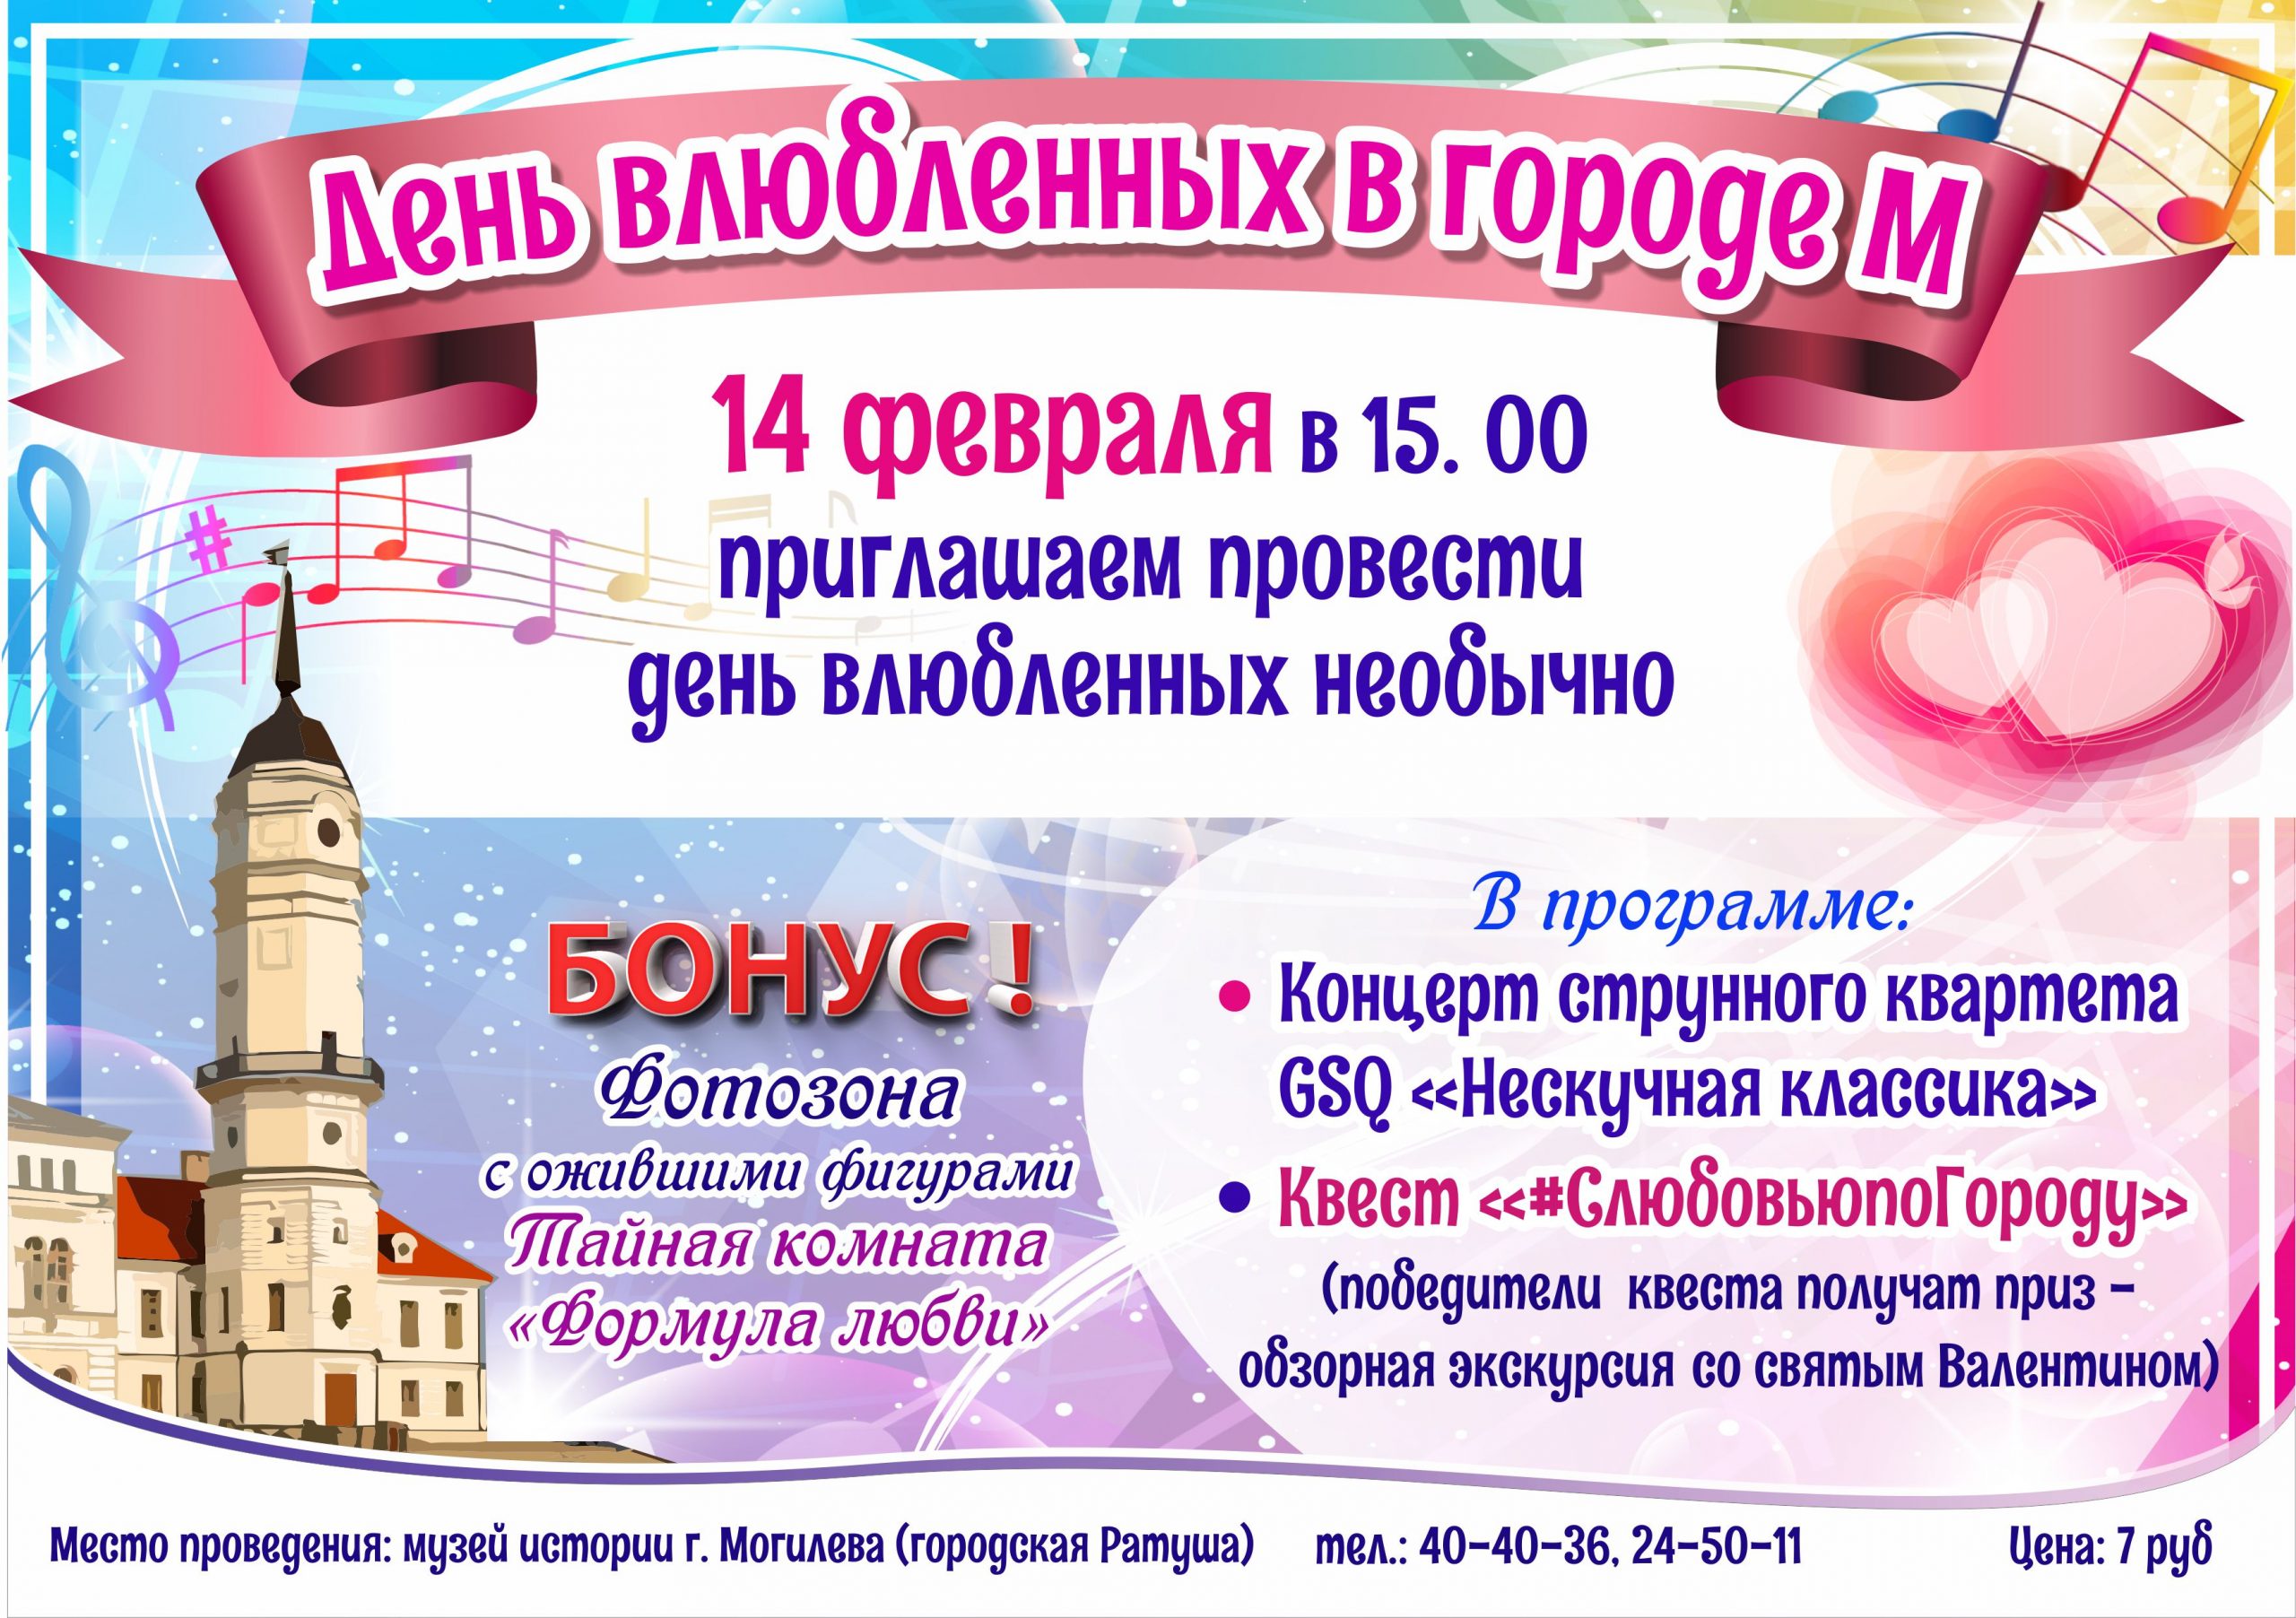 Могилевчан 14 февраля приглашают на «День влюбленных в городе М»